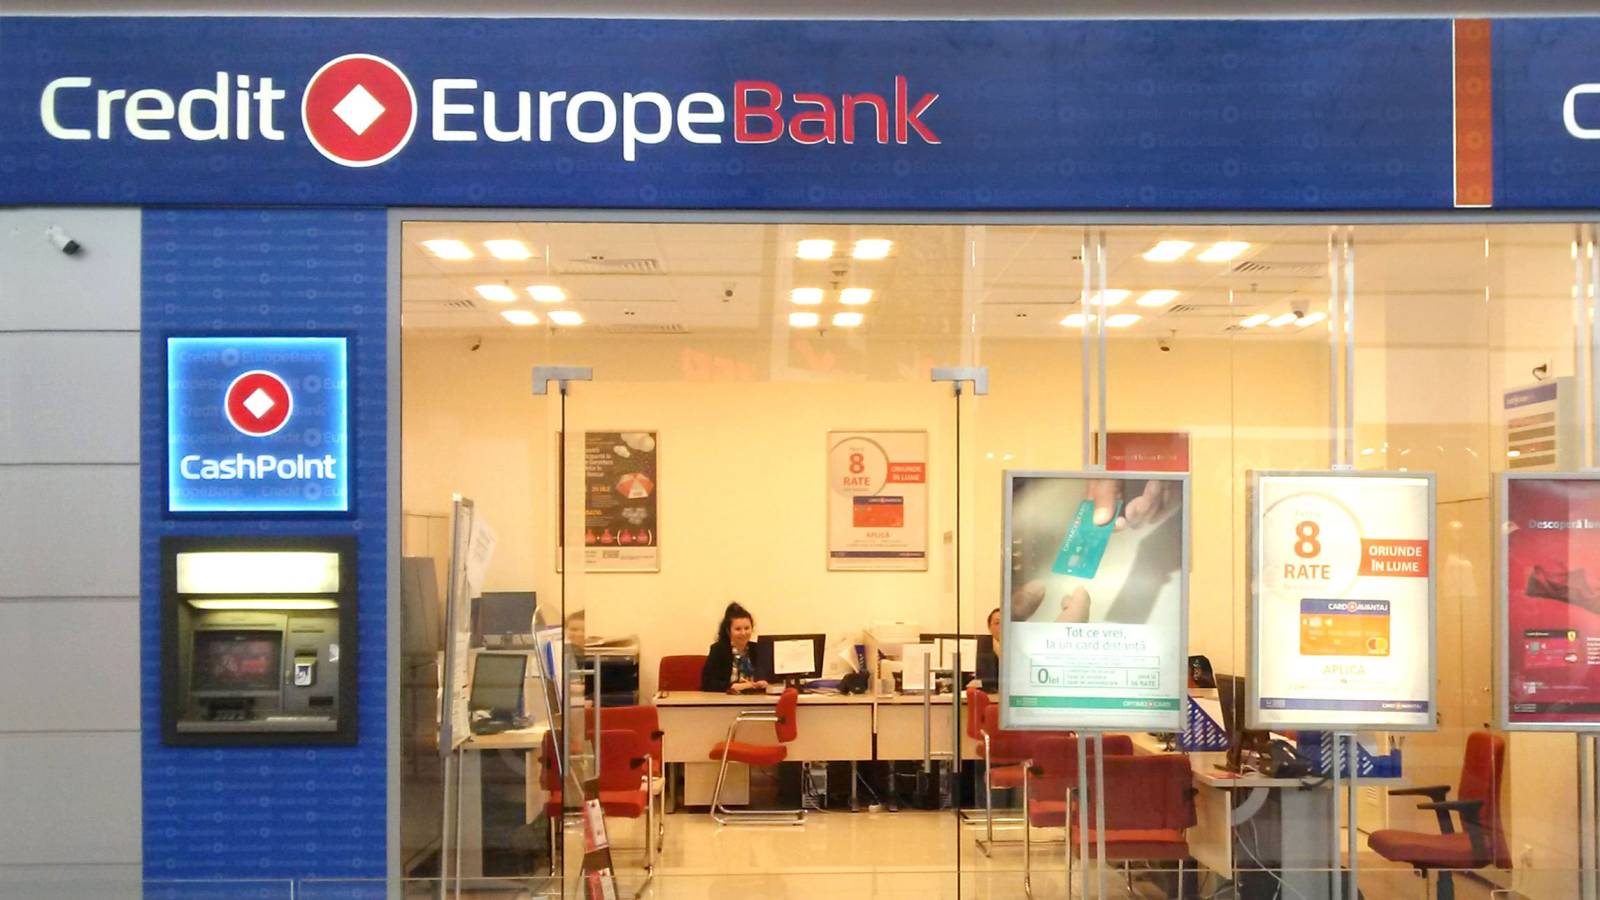 Solicitud del Banco Credit Europe